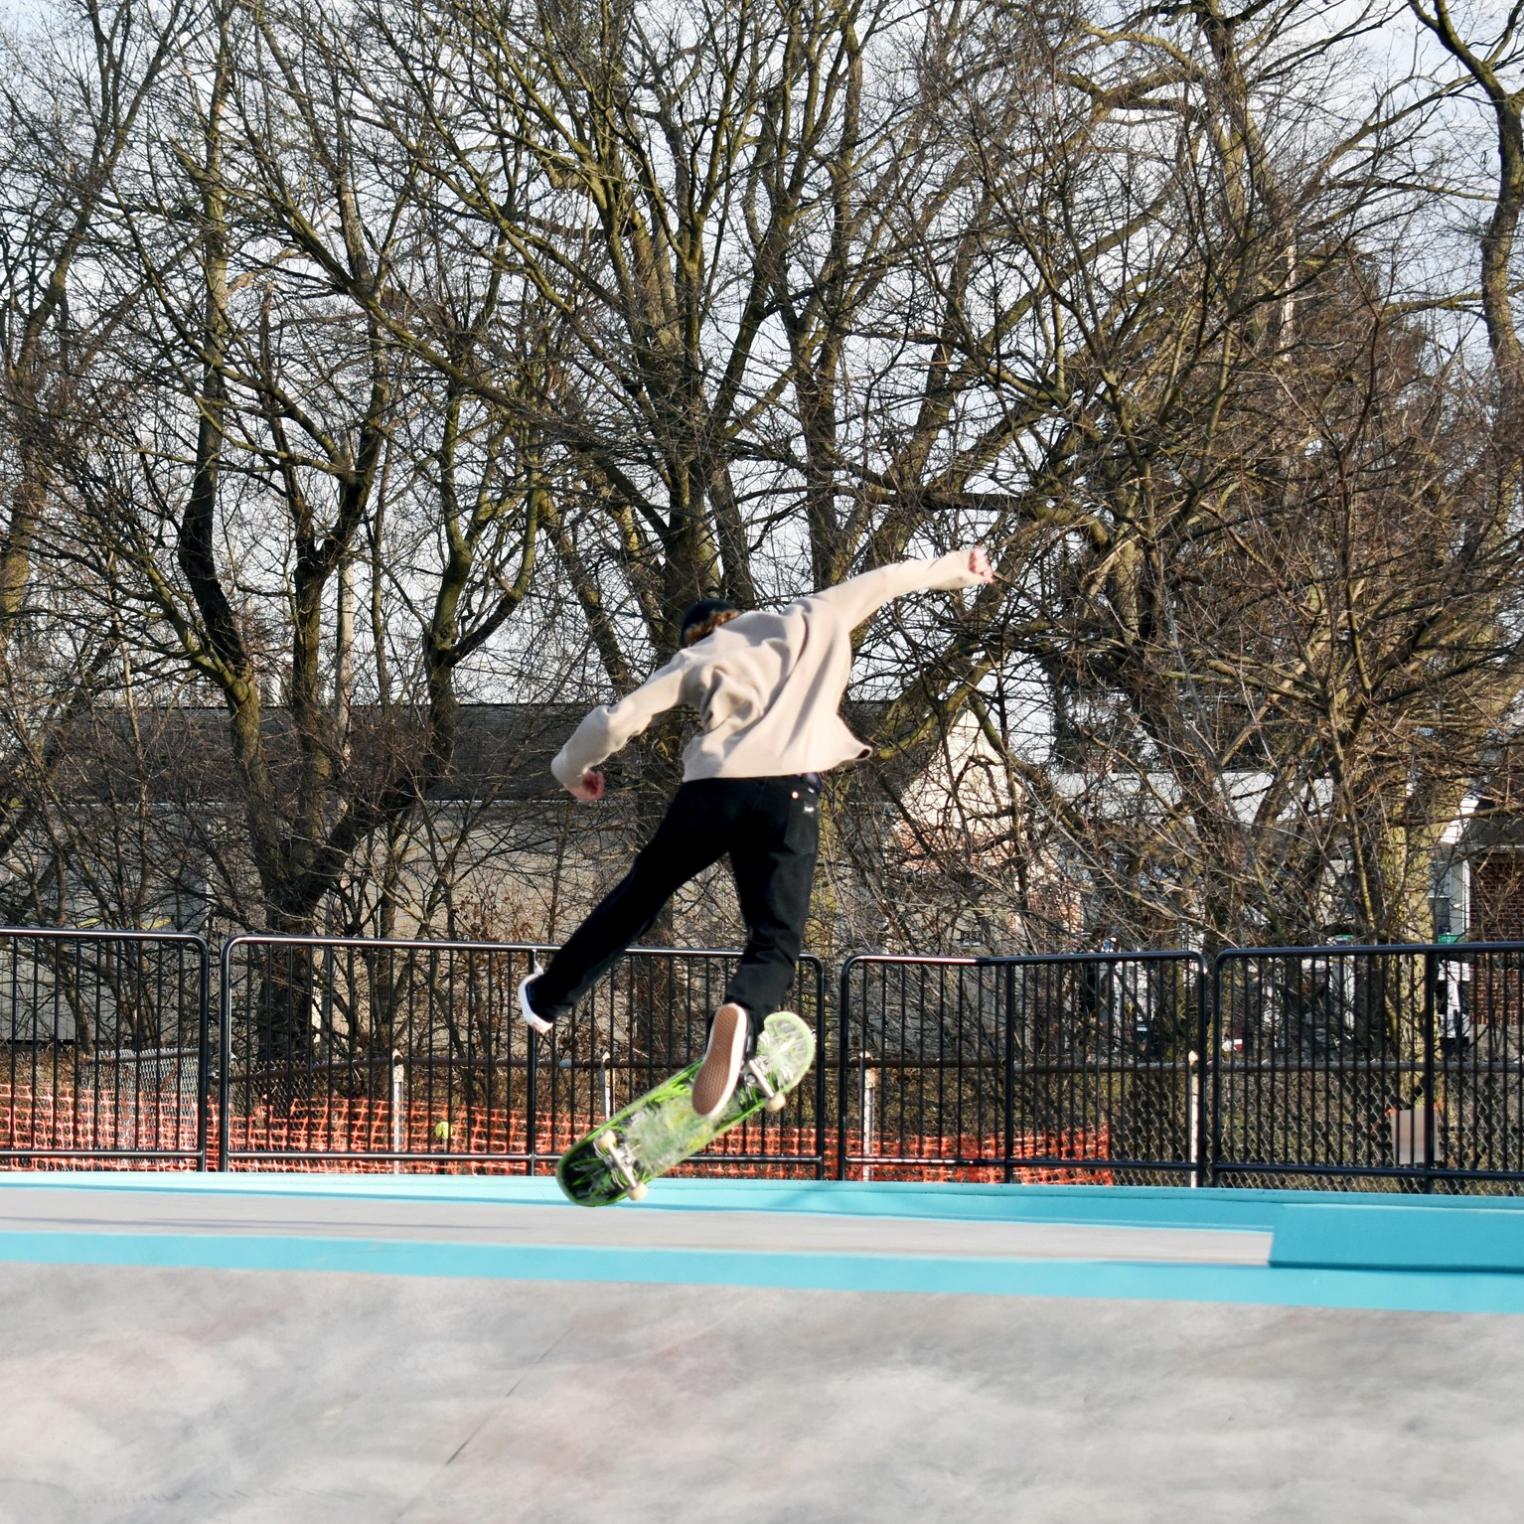 Skate Spot